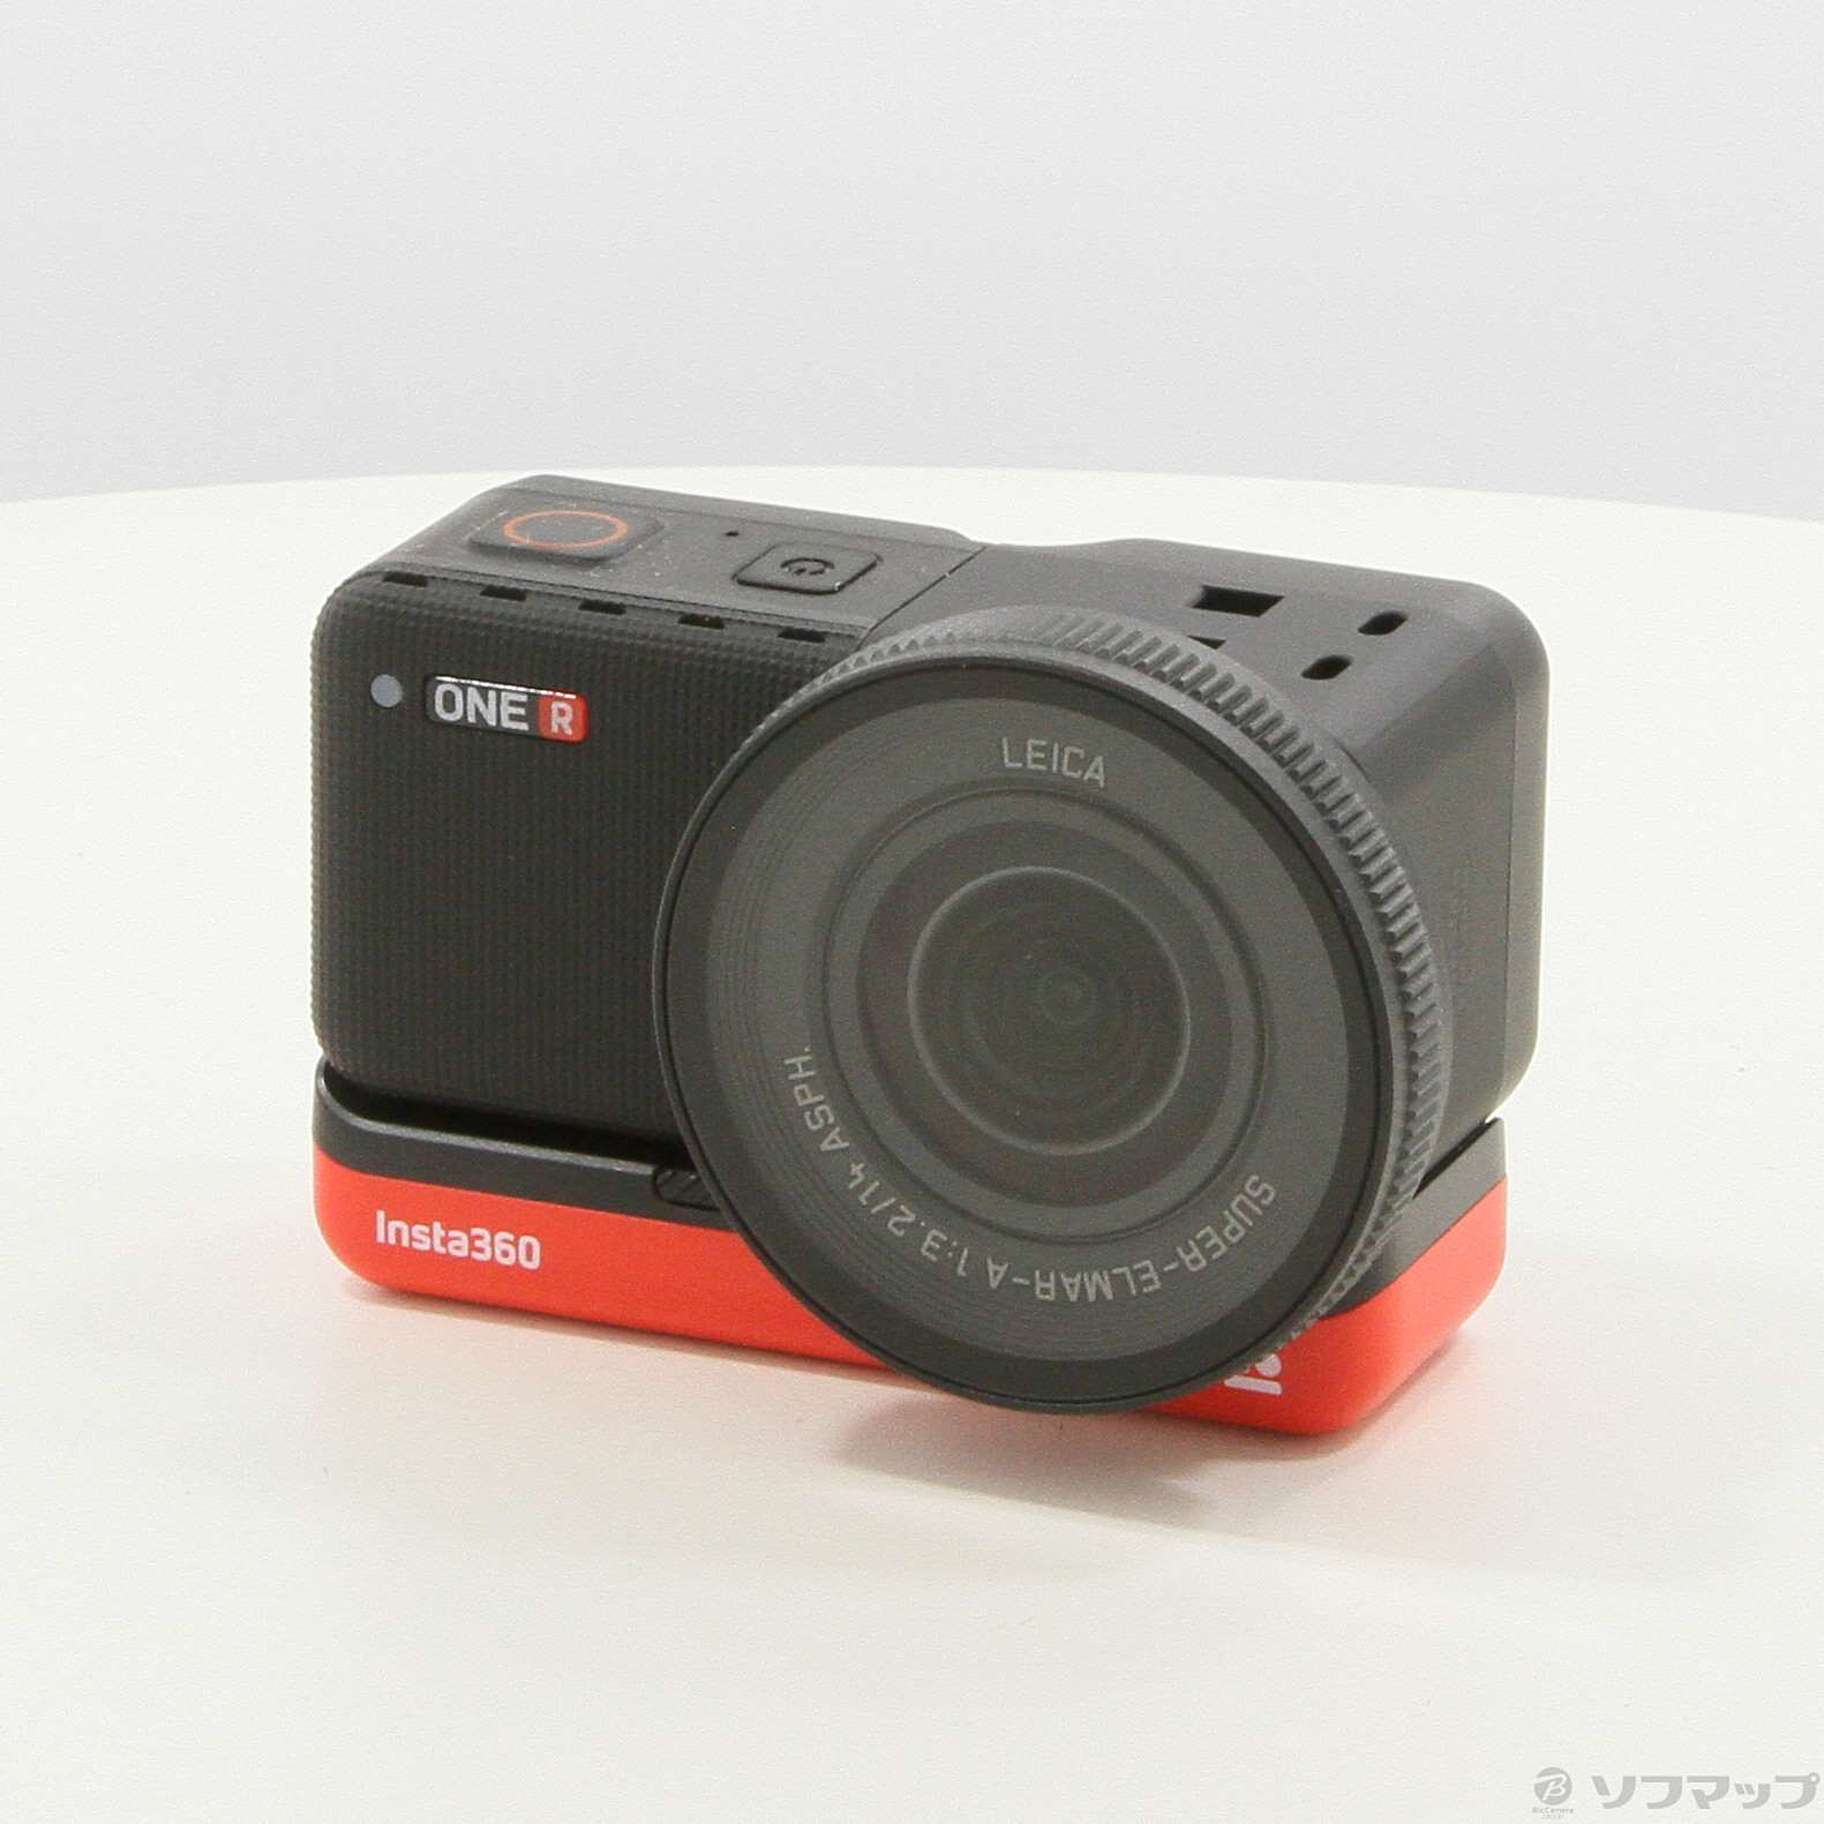 インスタ360 Insta360 ONE R - ビデオカメラ